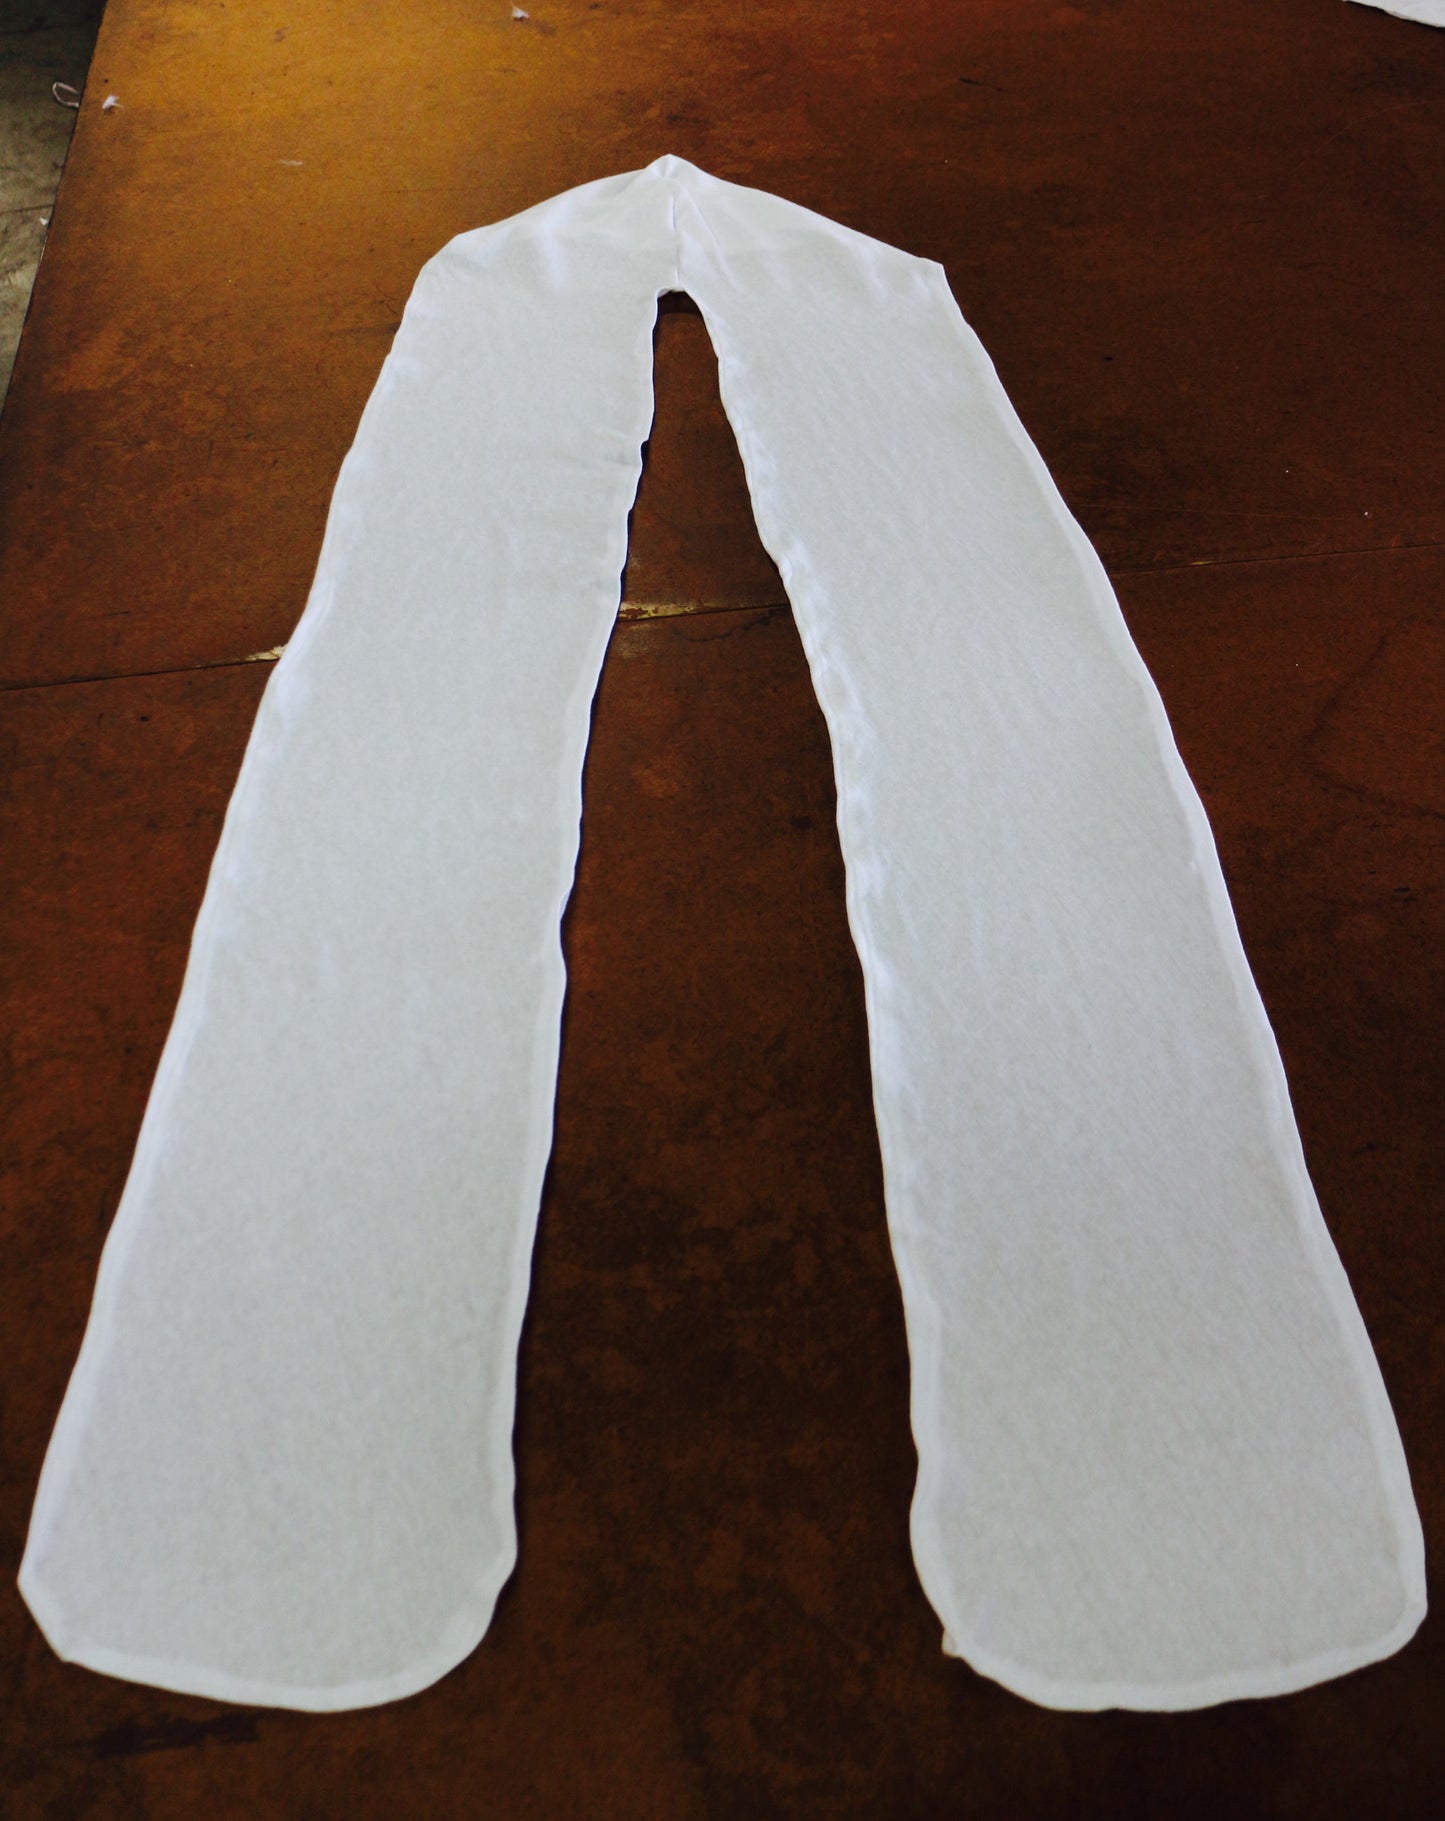 All cotton Unisex Turban - White